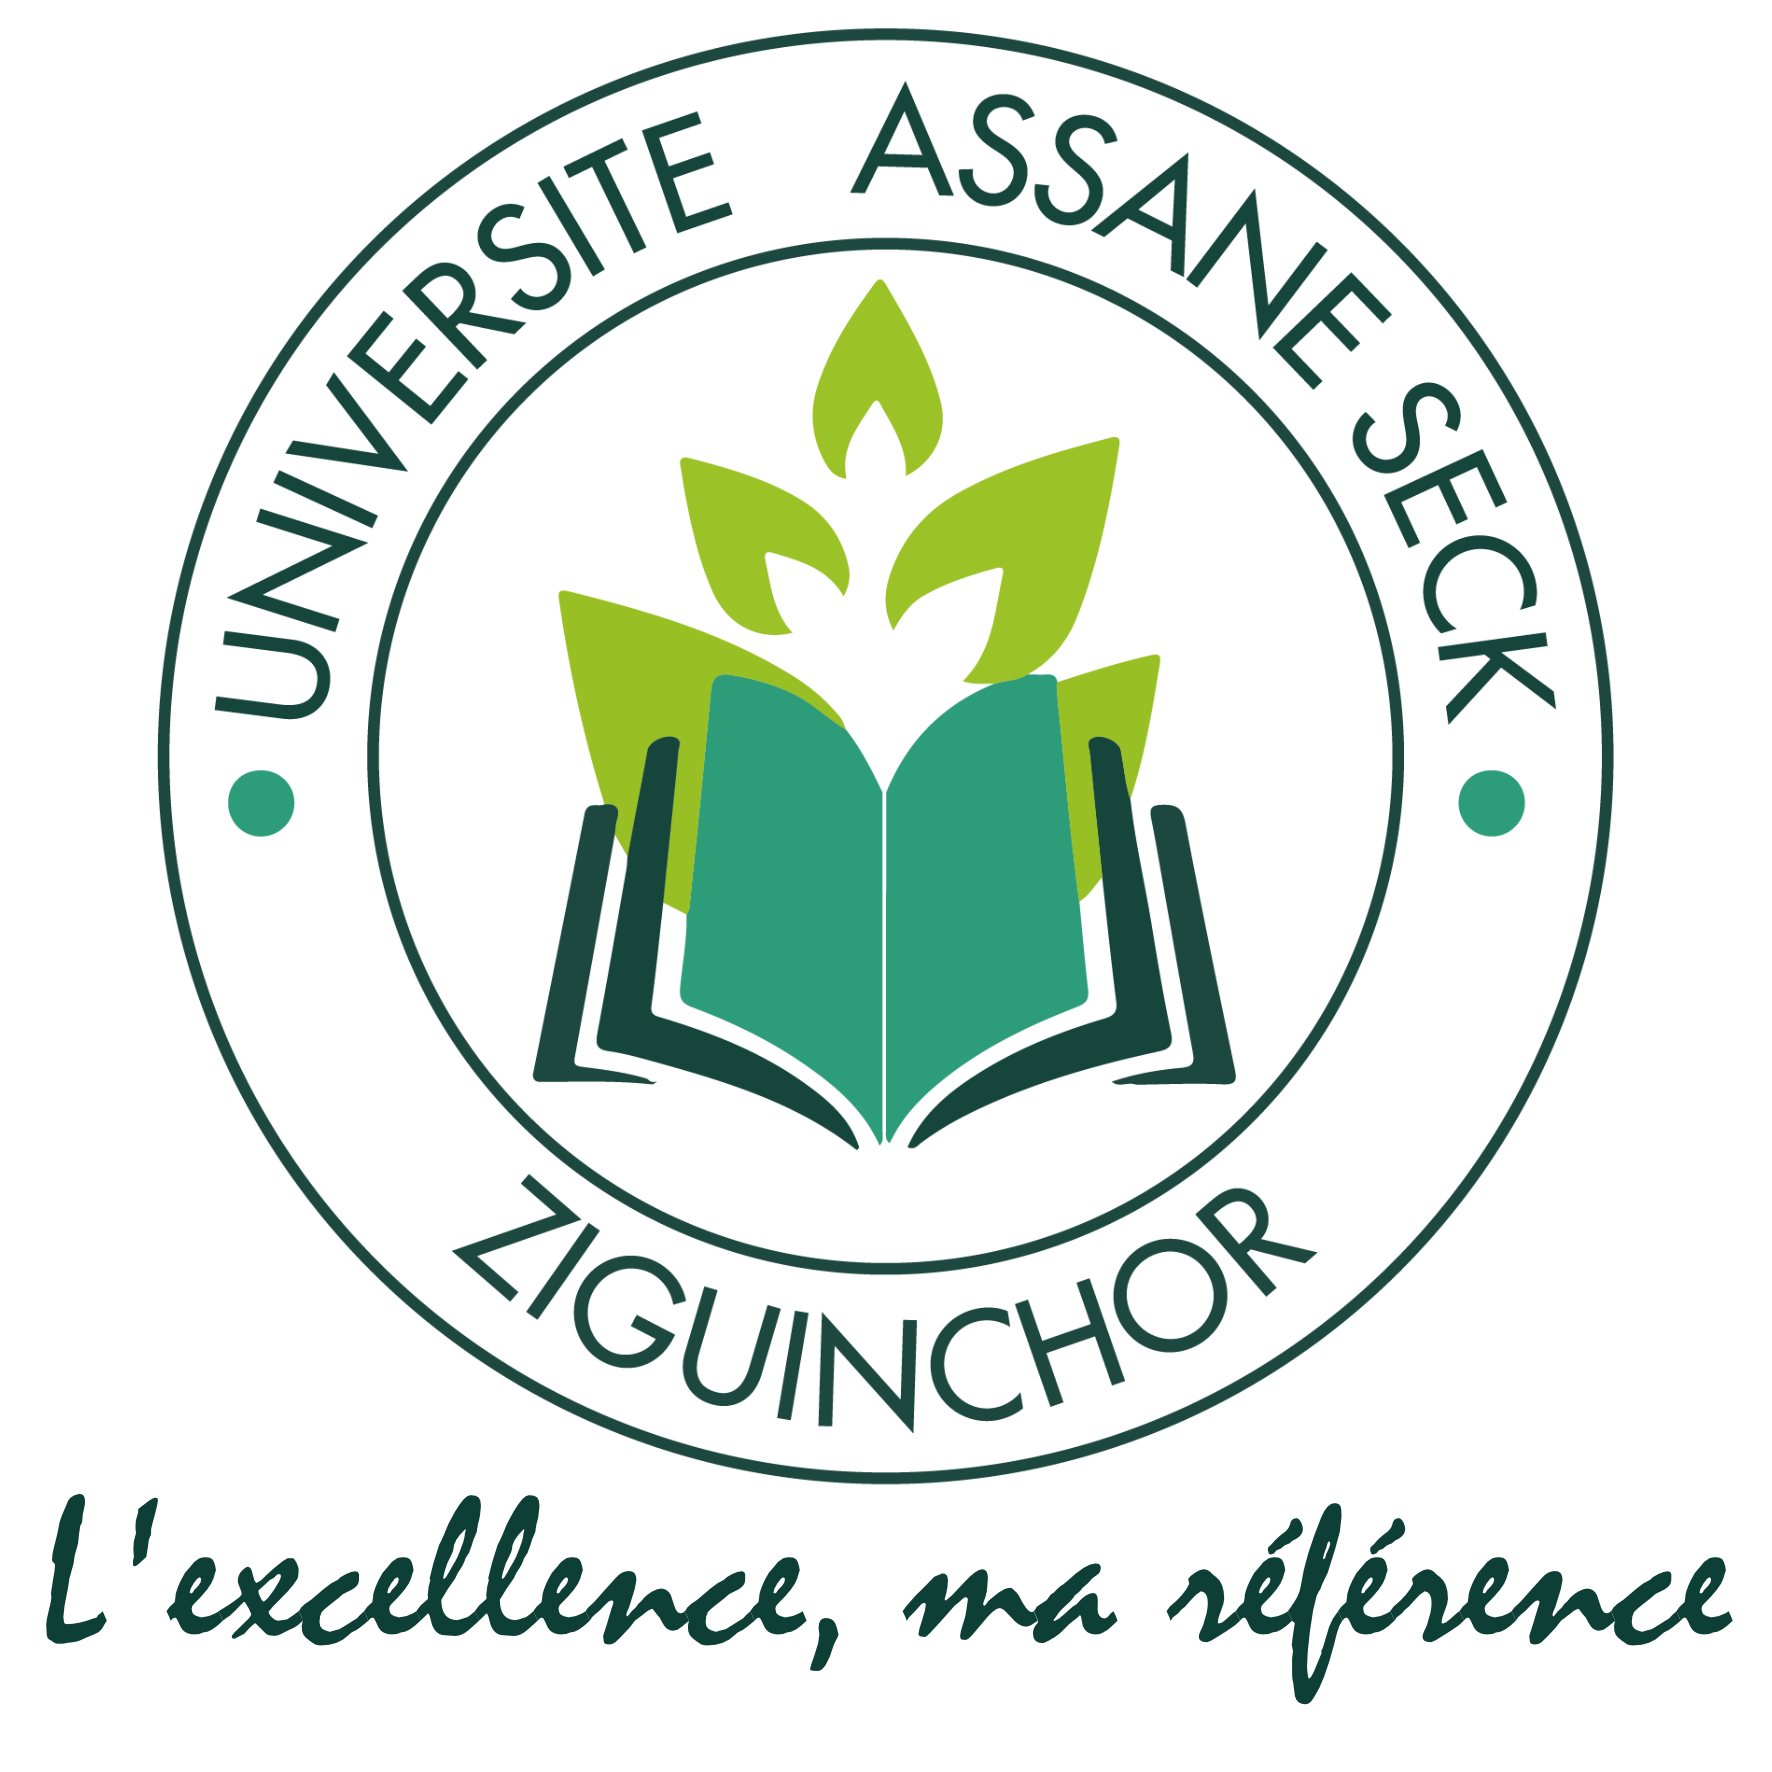 Candidature à l’admission au Master 1 de Mathématiques | Université Assane Seck de Ziguinchor